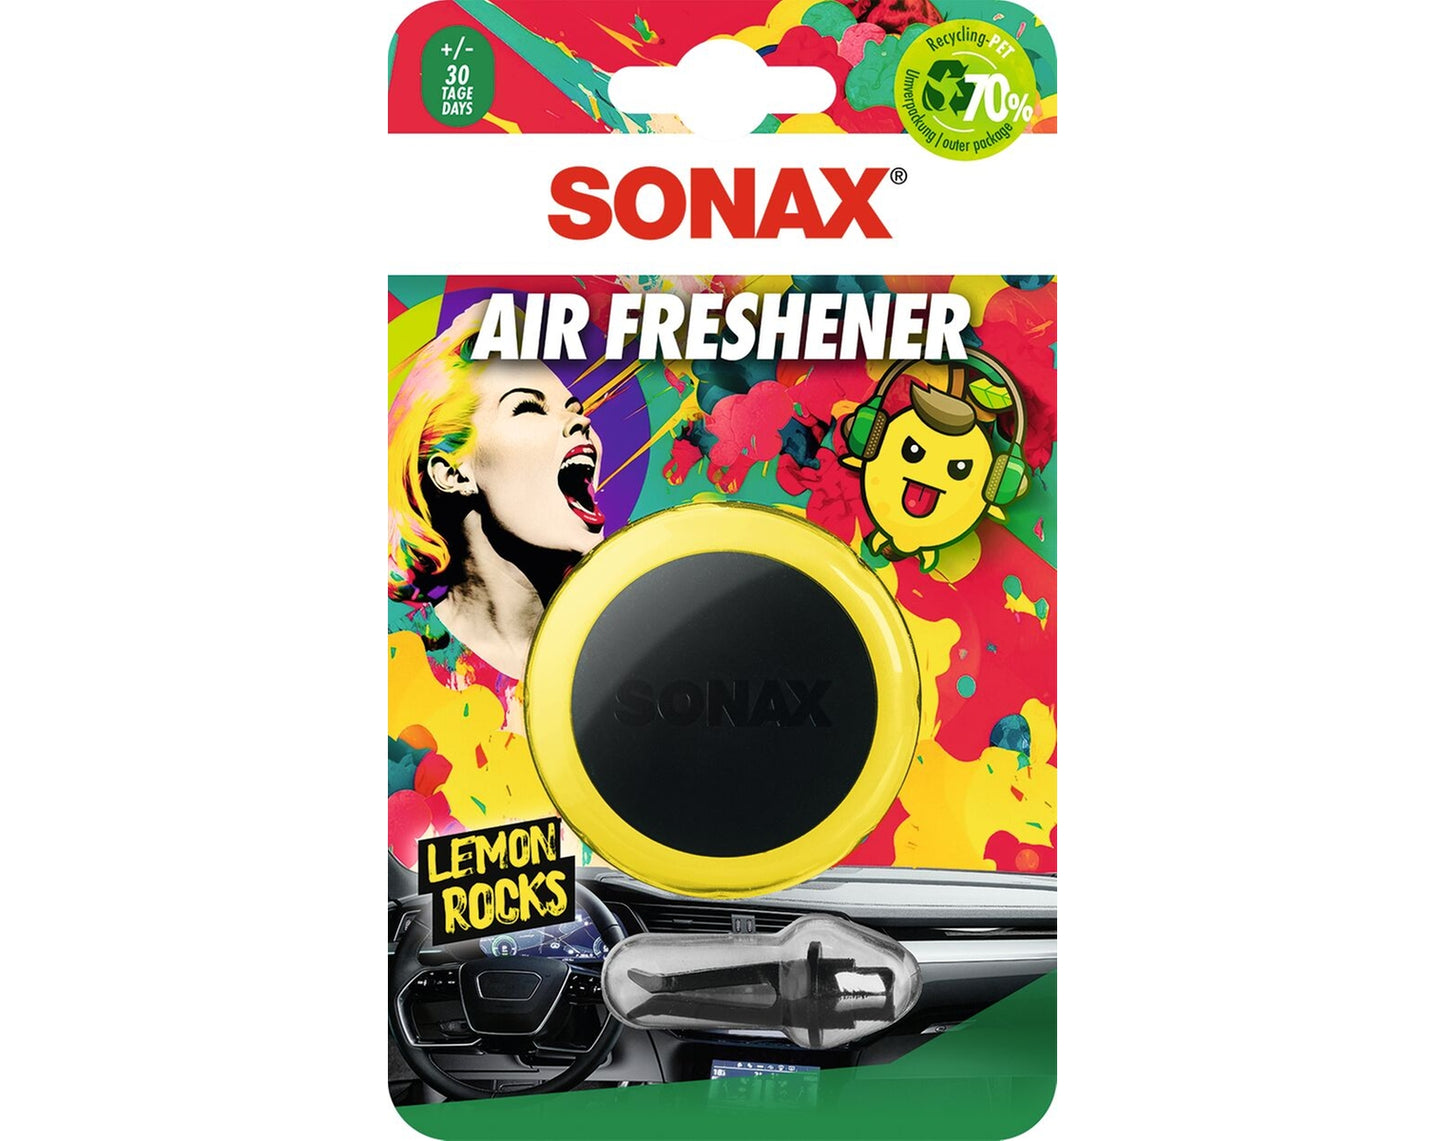 Sonax Air Freshener Lemon Rocks